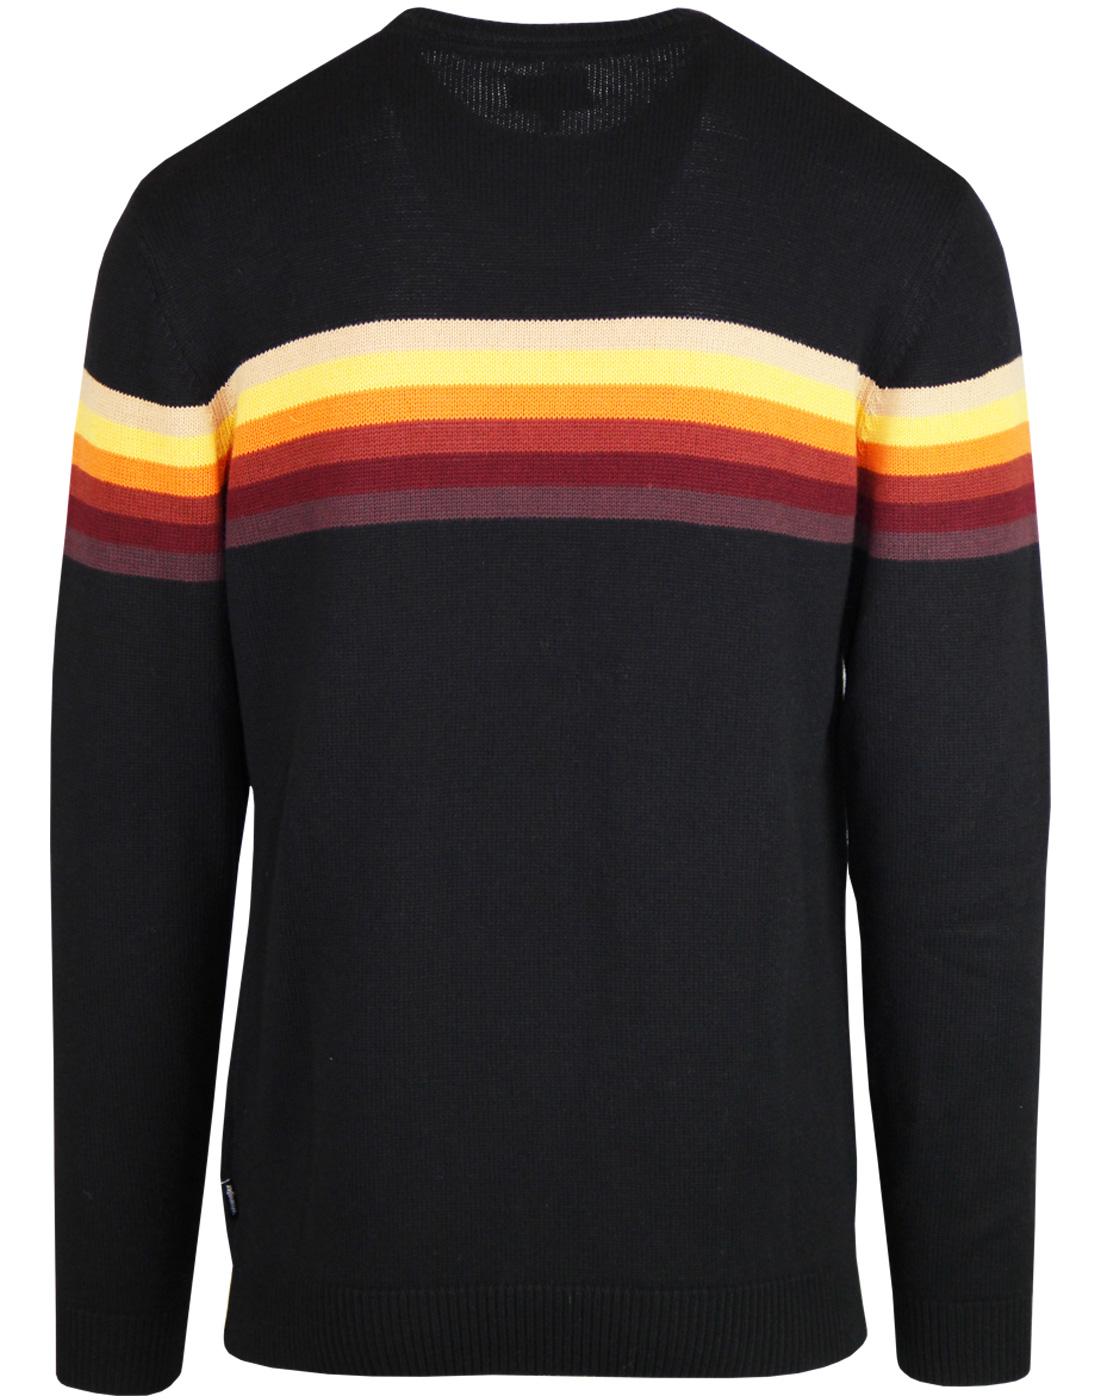 WRANGLER Retro 1970s Rainbow Stripe Knitted Jumper in Black